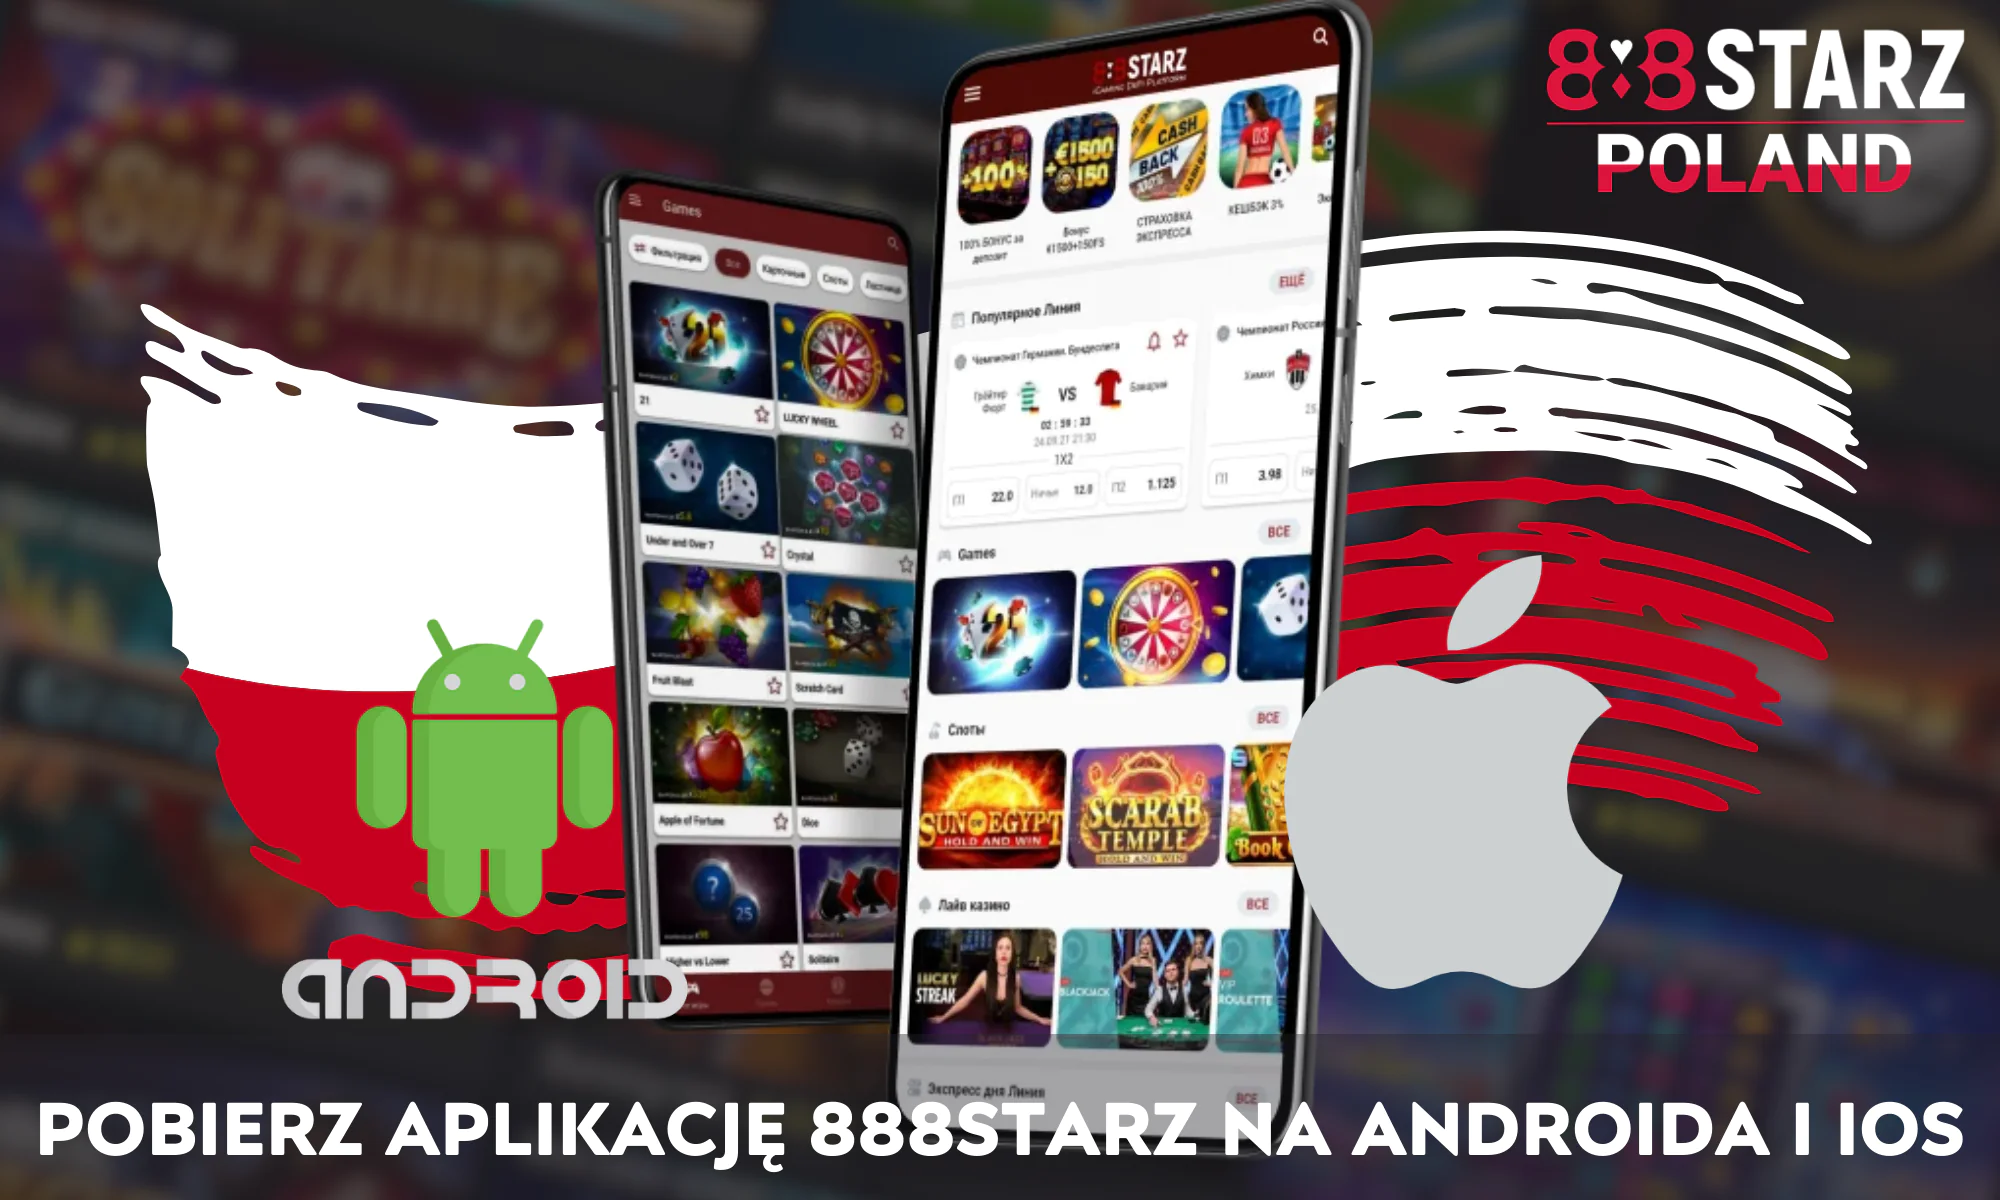 888Starz opracował aplikację, z której można korzystać zarówno na telefonach z systemem Android, jak i IOS